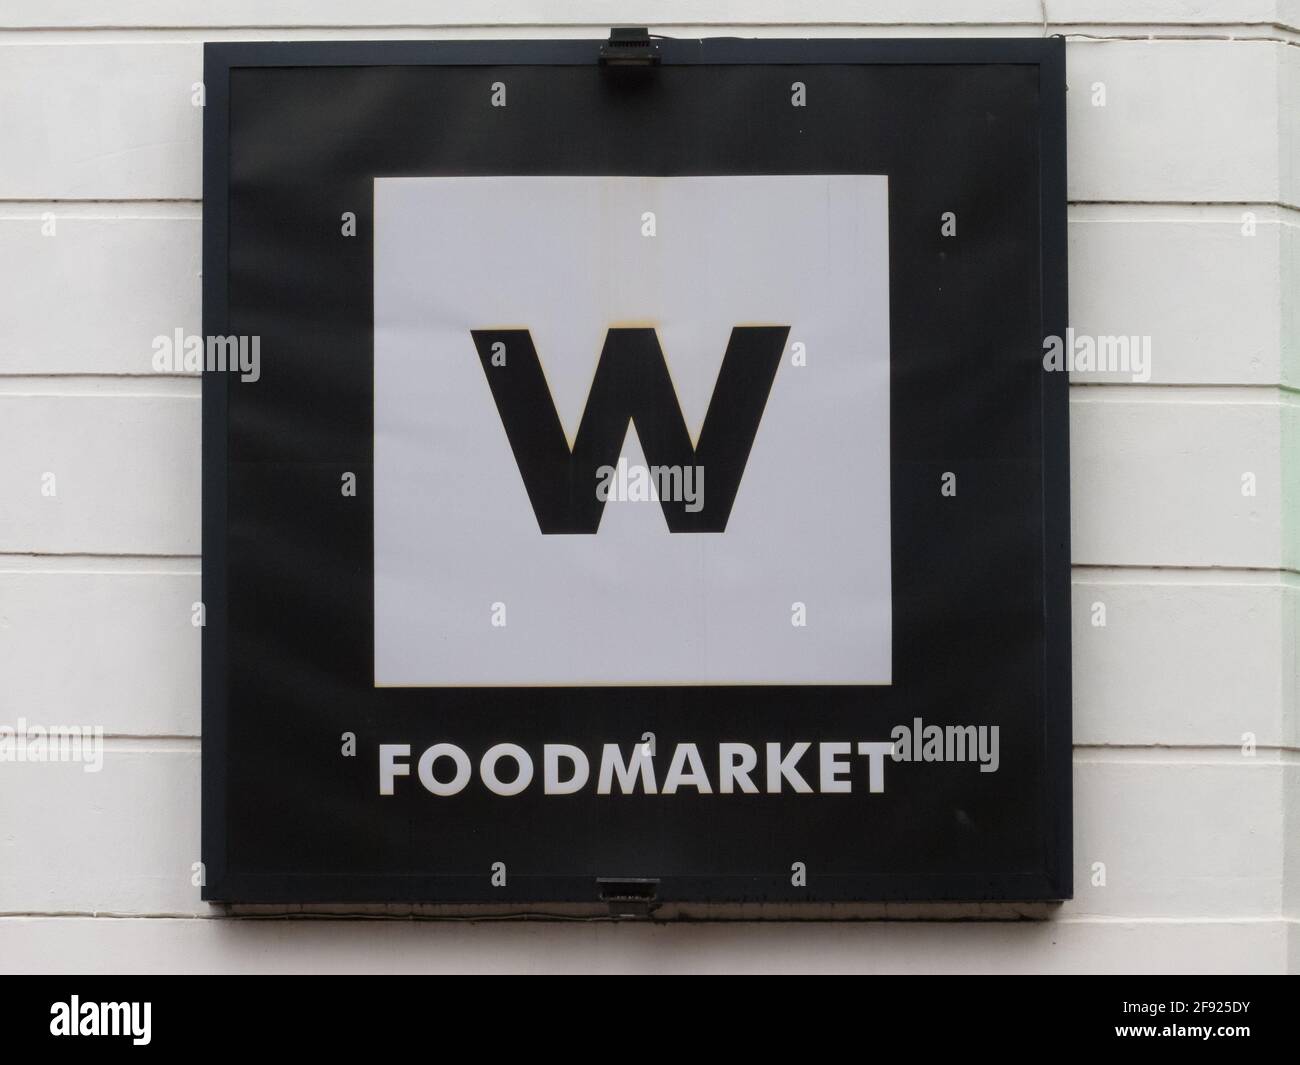 Woolworths Foodmarket Zeichen an einer Wand in Südafrika mit Das Logo und die Marke W Concept Retail Food Shop Stockfoto